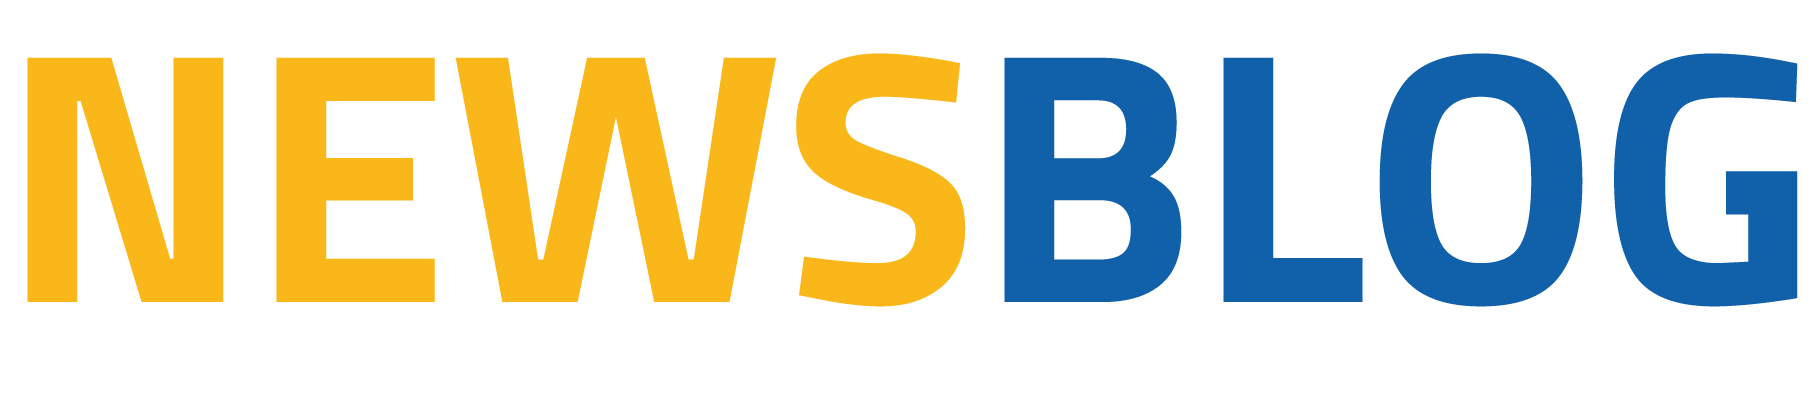 Newsblog logo